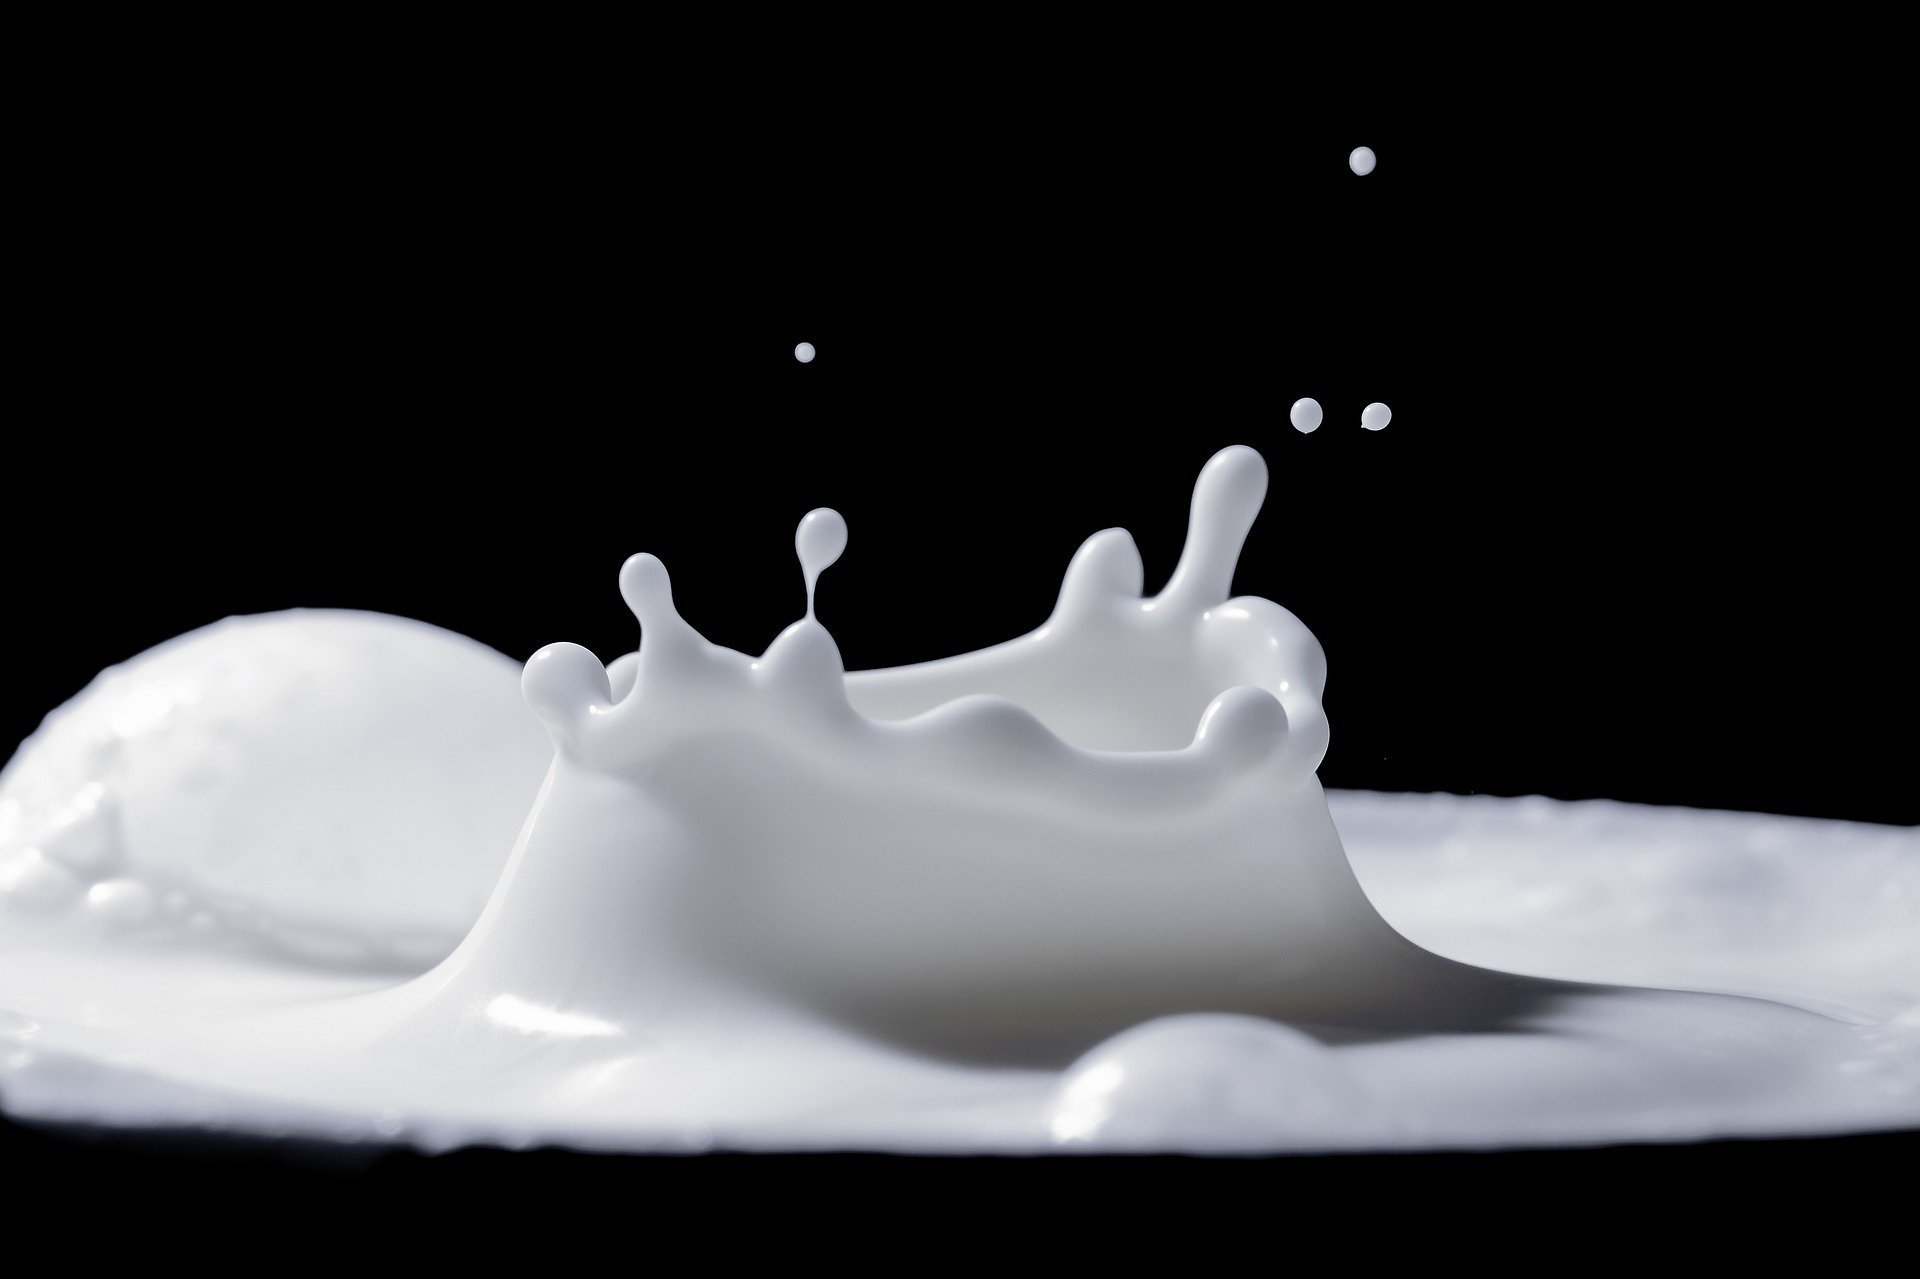 الخبراء يجيبون: هل الحليب مناسب لك؟